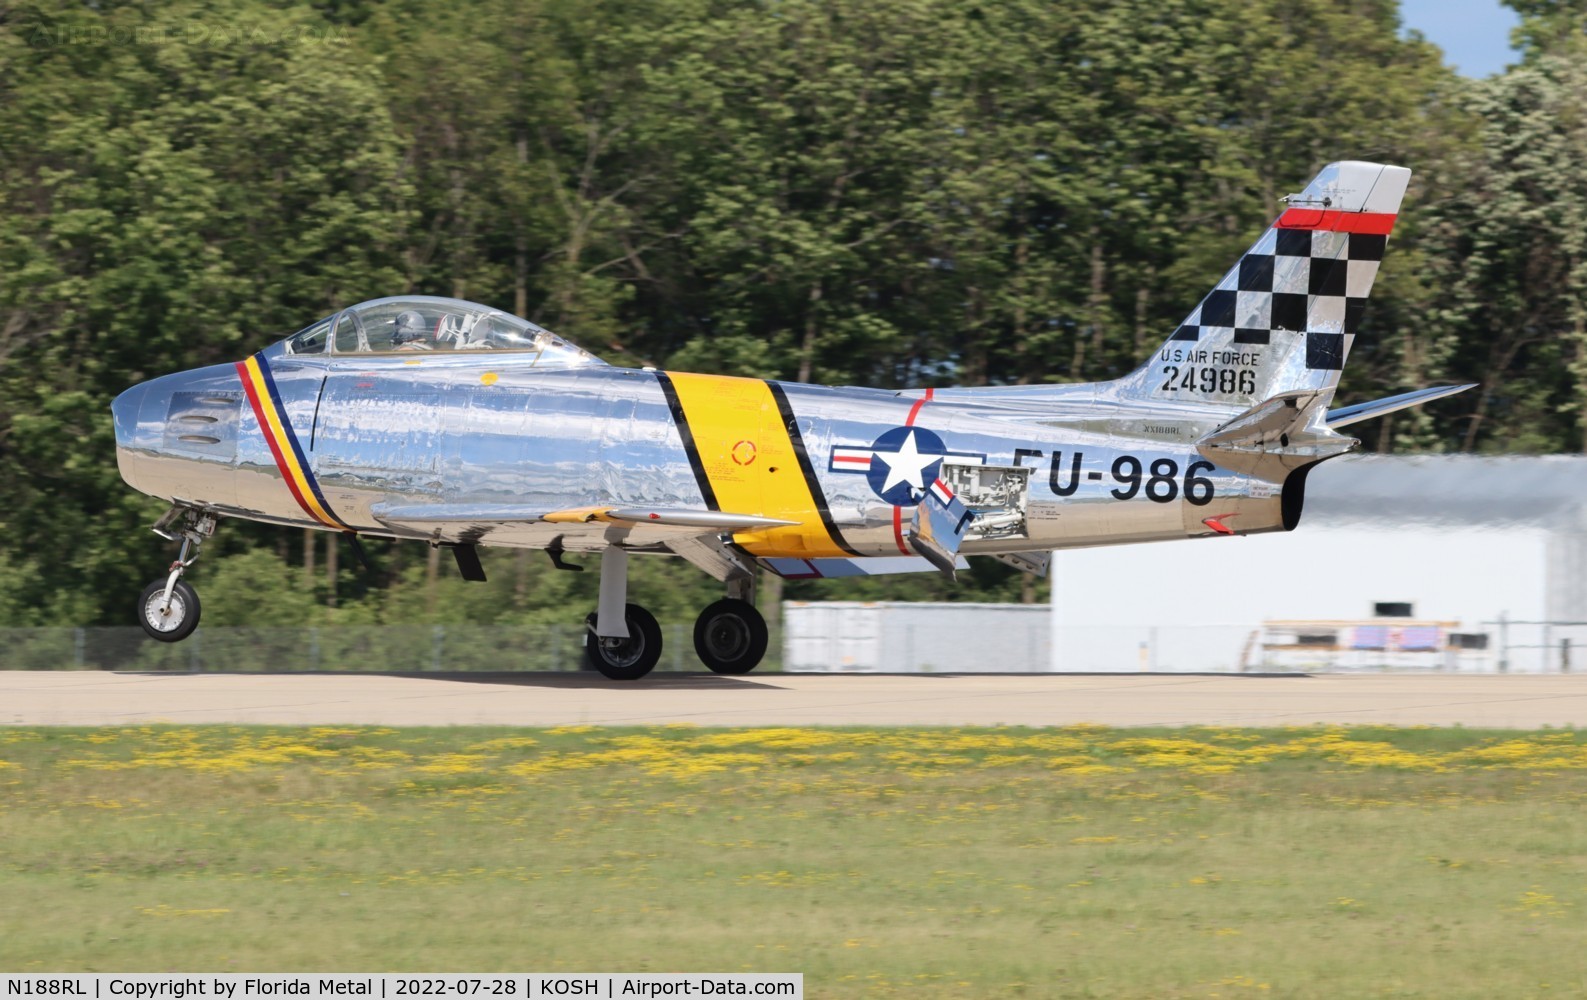 N188RL, 1952 North American F-86F Sabre C/N 191-682, F-86 zx